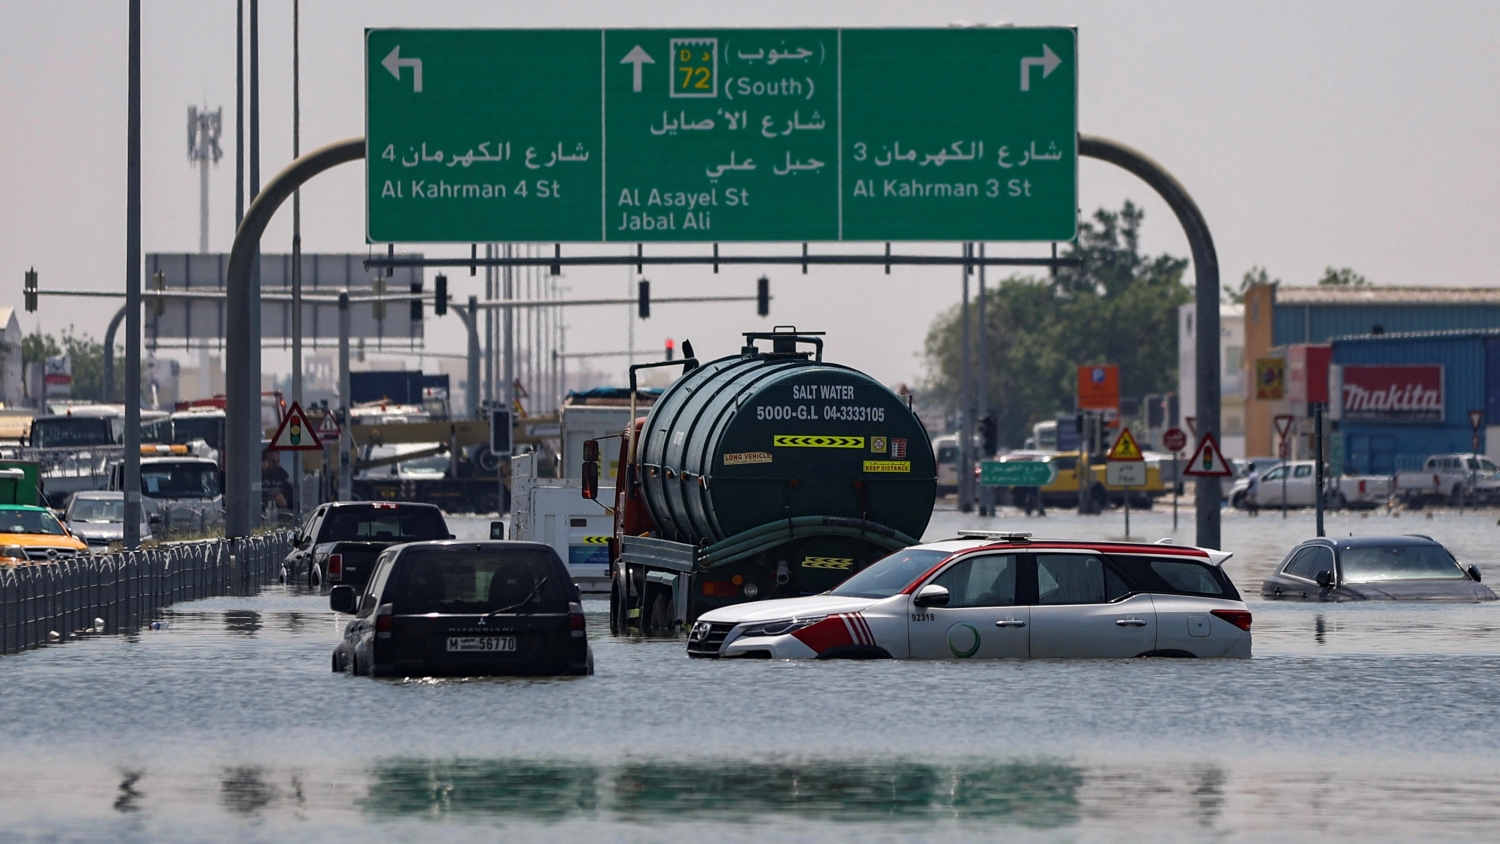 多圖 | 阿聯酋仍受水浸影響 迪拜國際機場連續3天受阻